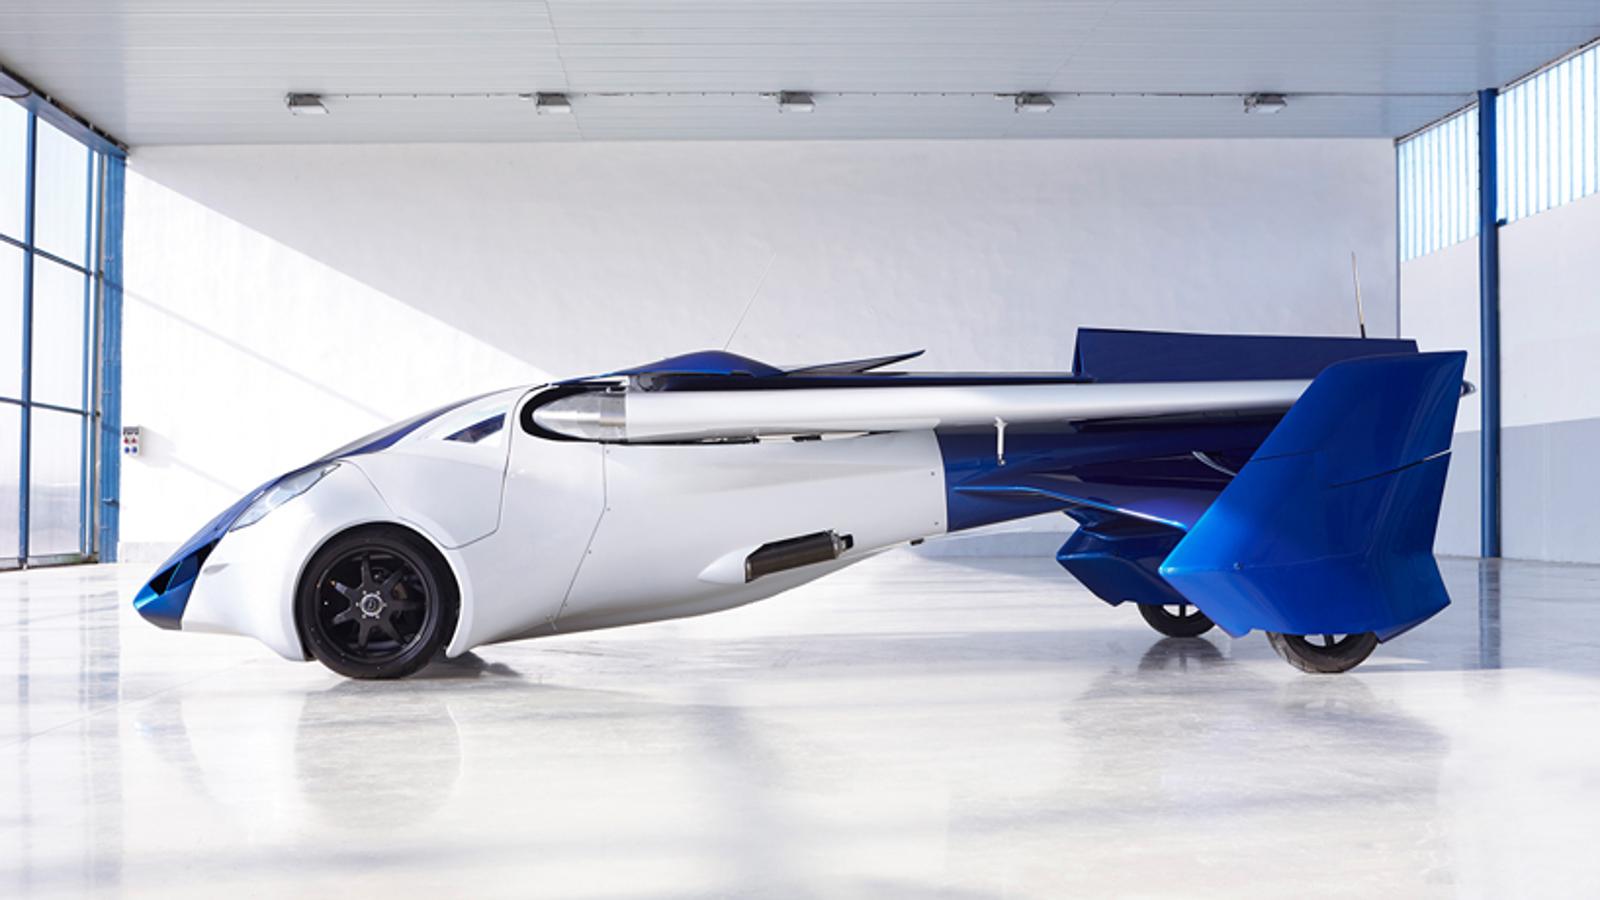 Aeromóvil 3.0. El Aeromobil 3.0 utiliza gasolina para sus motores y tiene una capacidad de vuelo hasta 3.000 metros de altura a una velocidad máxima de 160 km/h. Dispone de una autonomía de 700 km